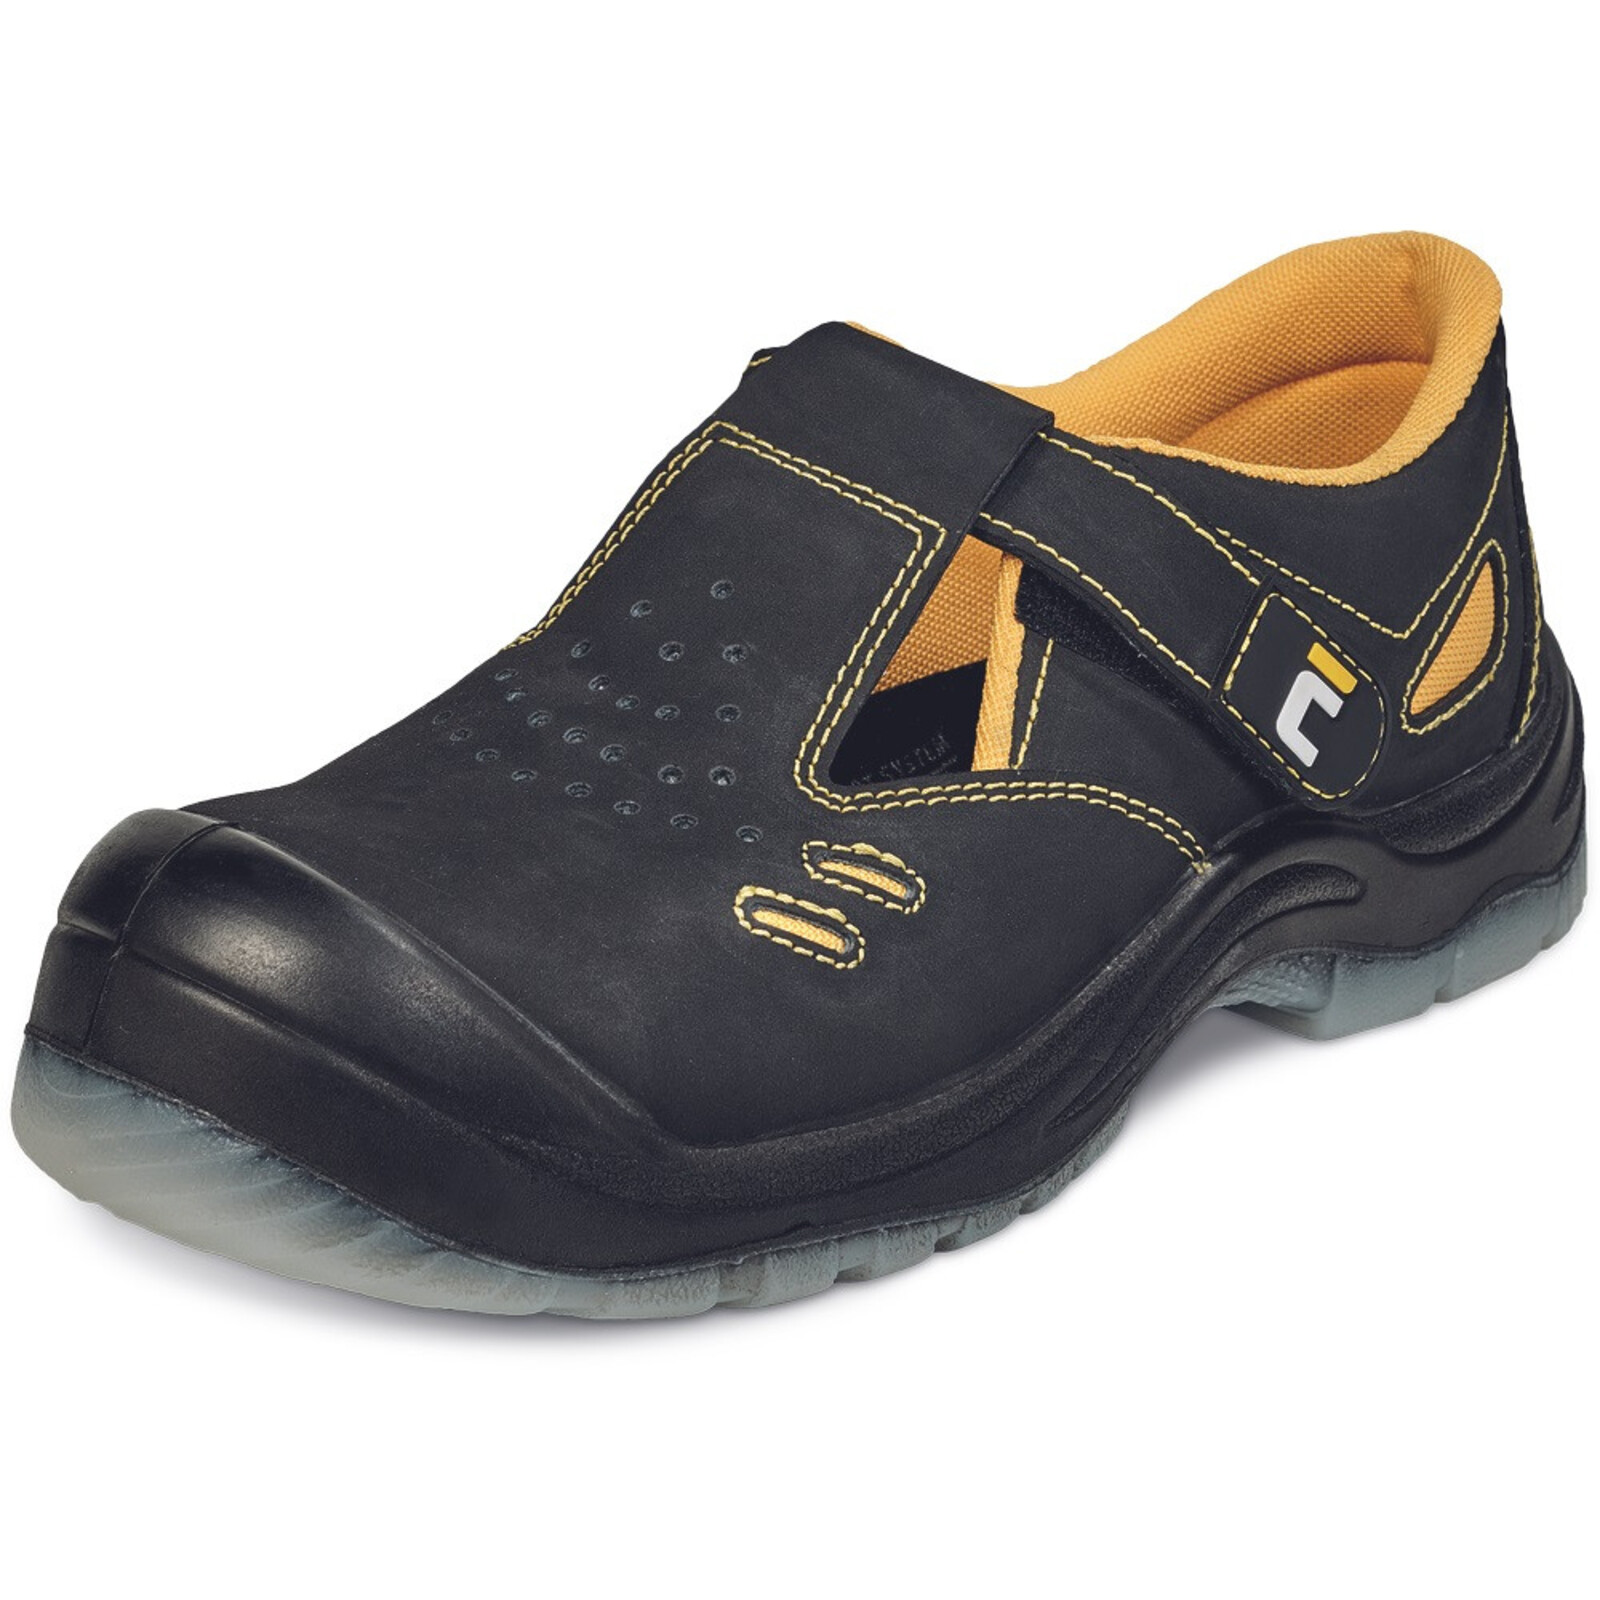 Bezpečnostné sandále Cerva BK TPU MF S1P SRC - veľkosť: 38, farba: čierna/žltá